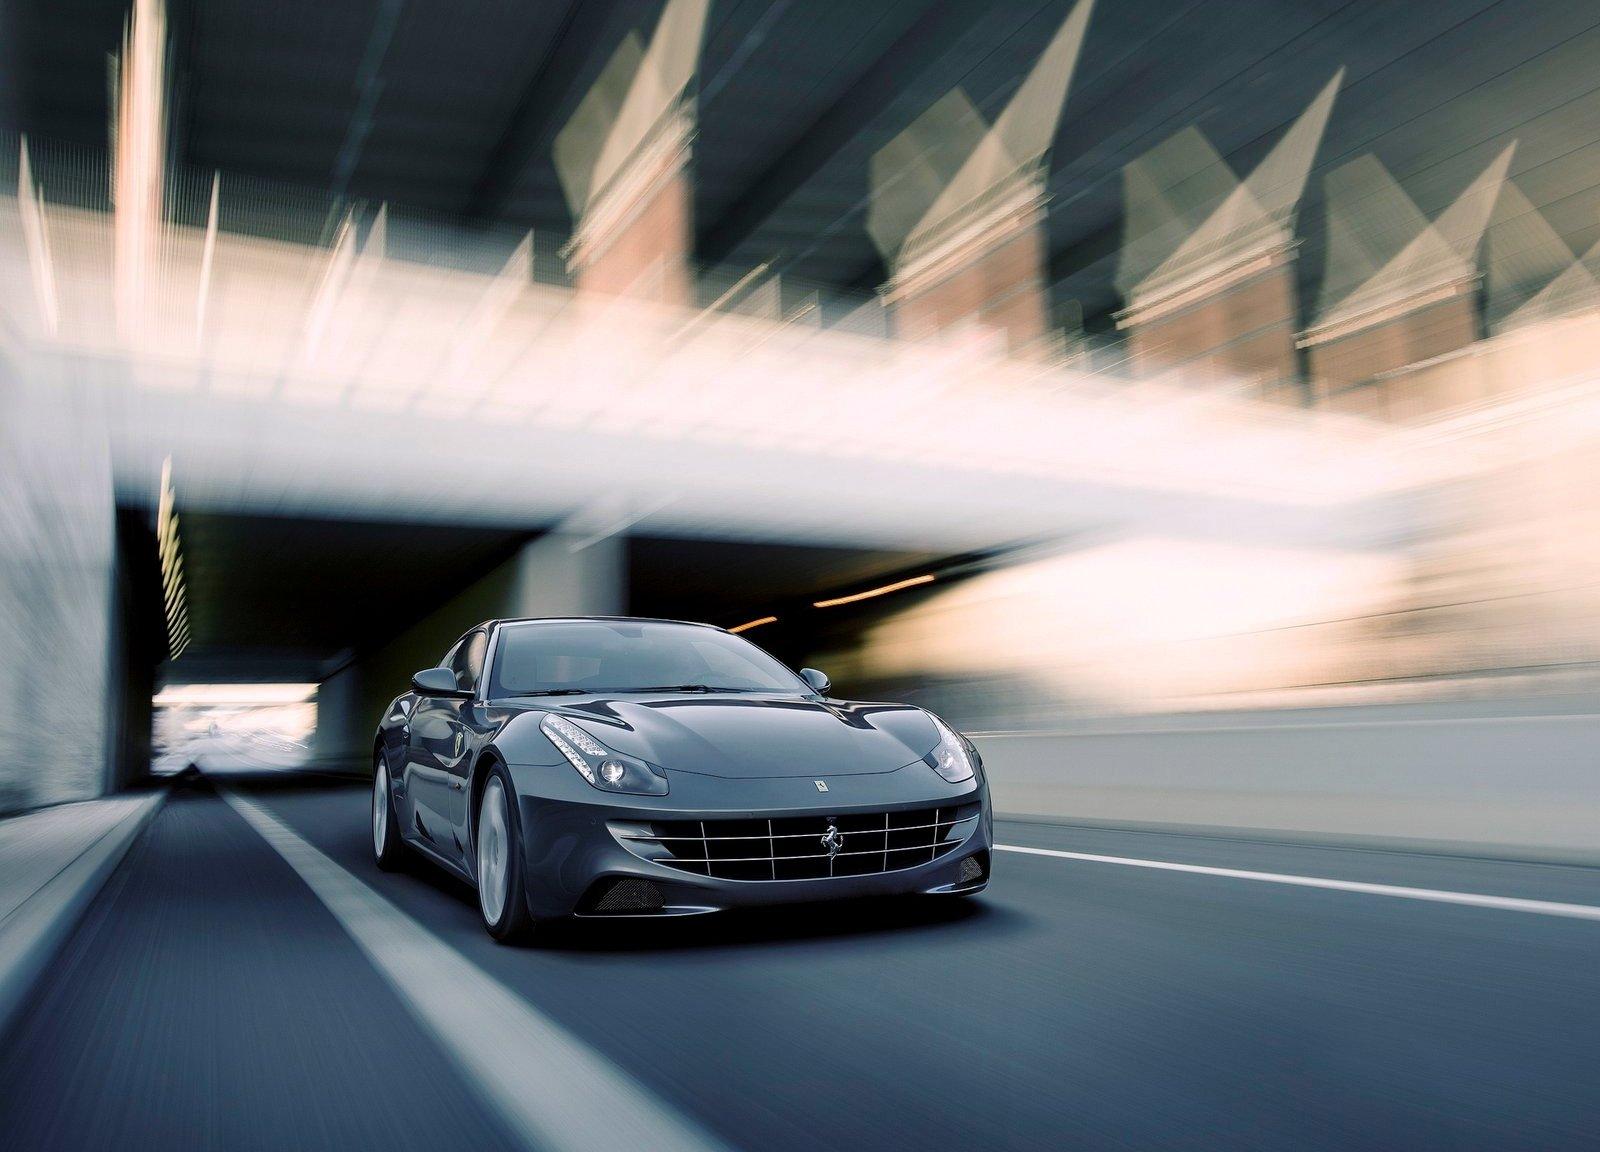 Ferrari FF Wallpaper Effect Picture, Image